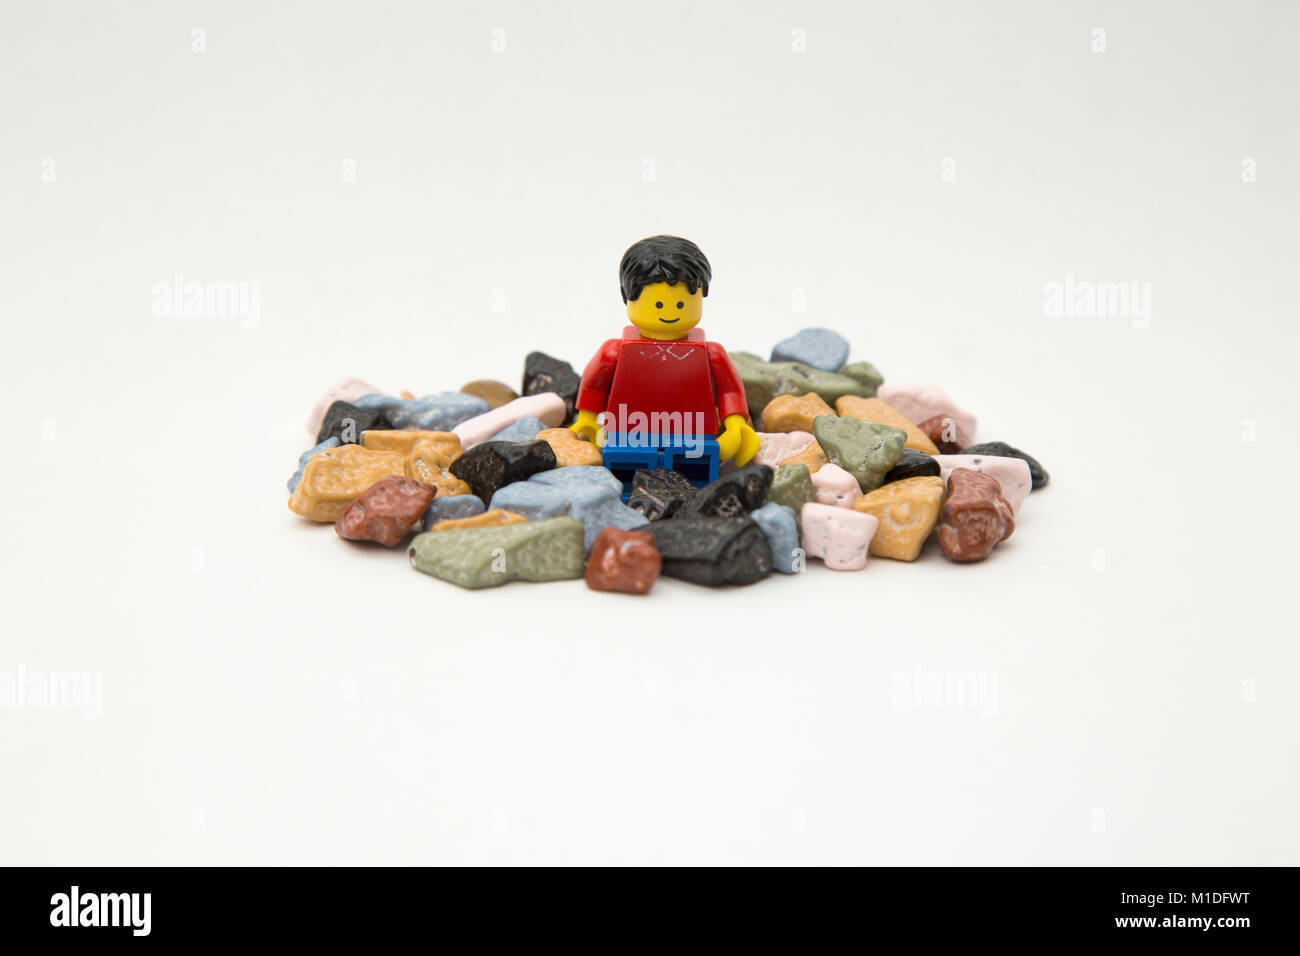 Larry der Lego Kerl sitzt in einem Haufen von Schokolade Felsen. Stockfoto